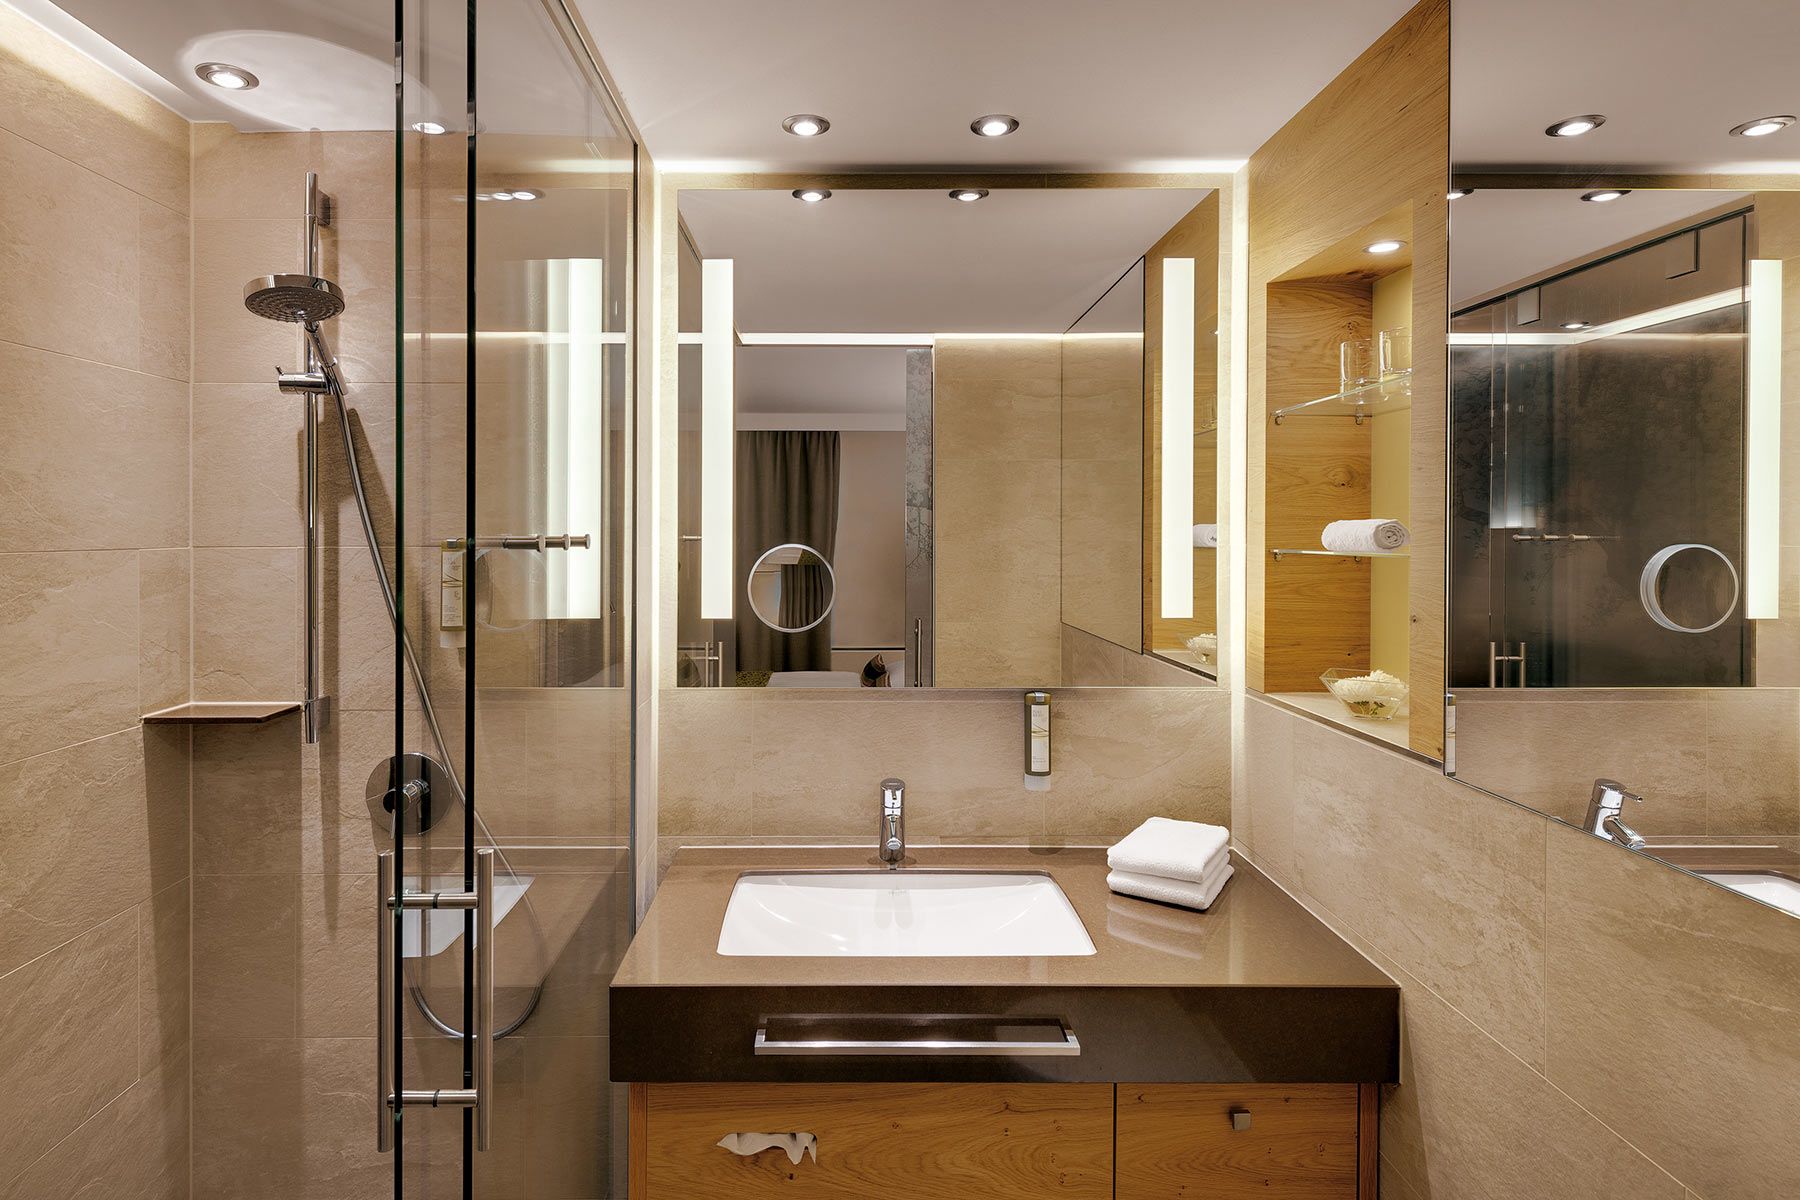 Hotelbadezimmer in warmen und natürlichen Farben und braunem Waschtisch